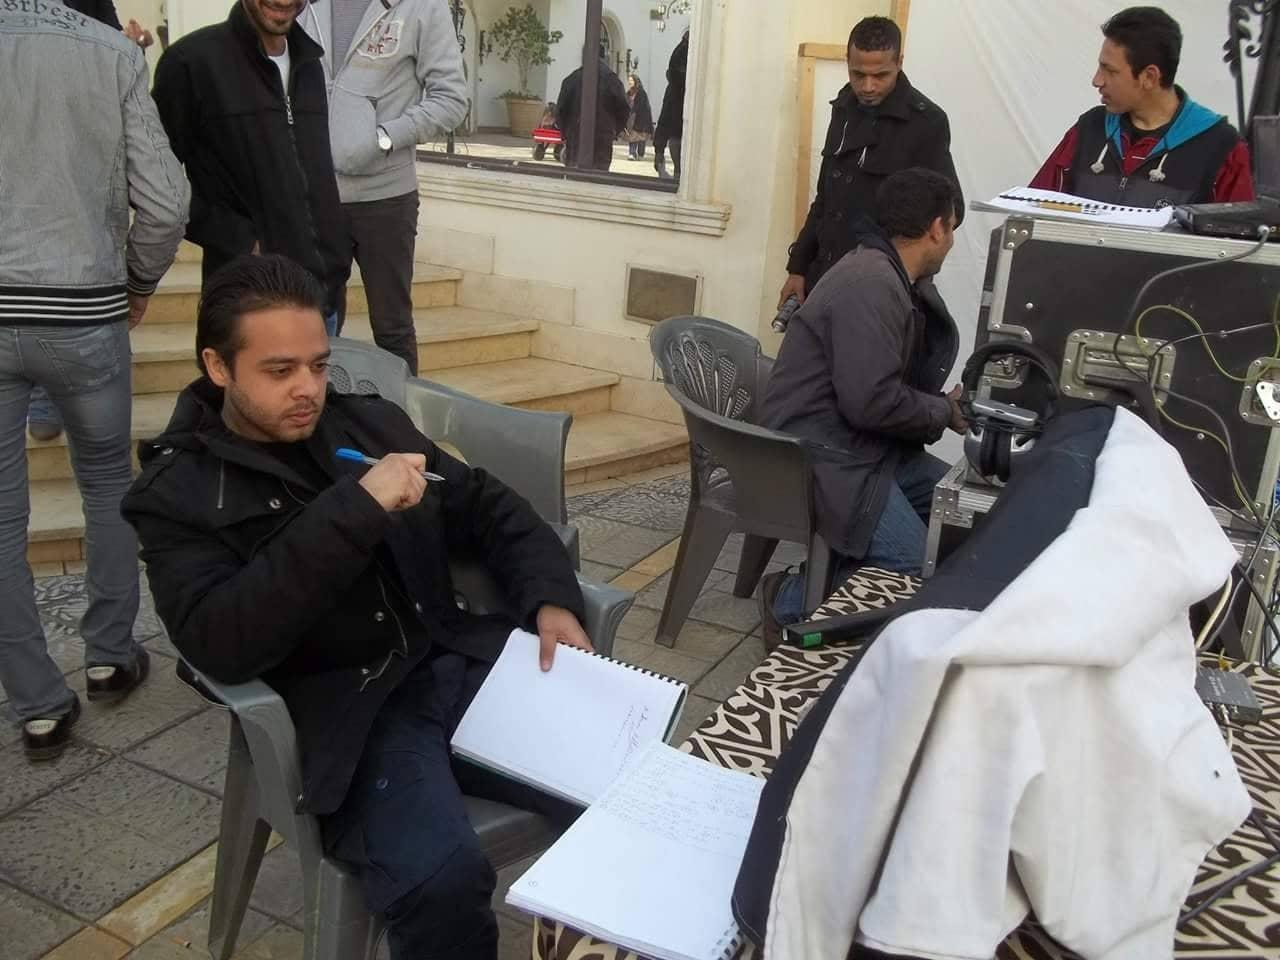   «خيوط جهنم»..المخرج «كريم علاء» يبدأ أعمال التحضير لأول فيلم رعب 3D في الشرق الأوسط 